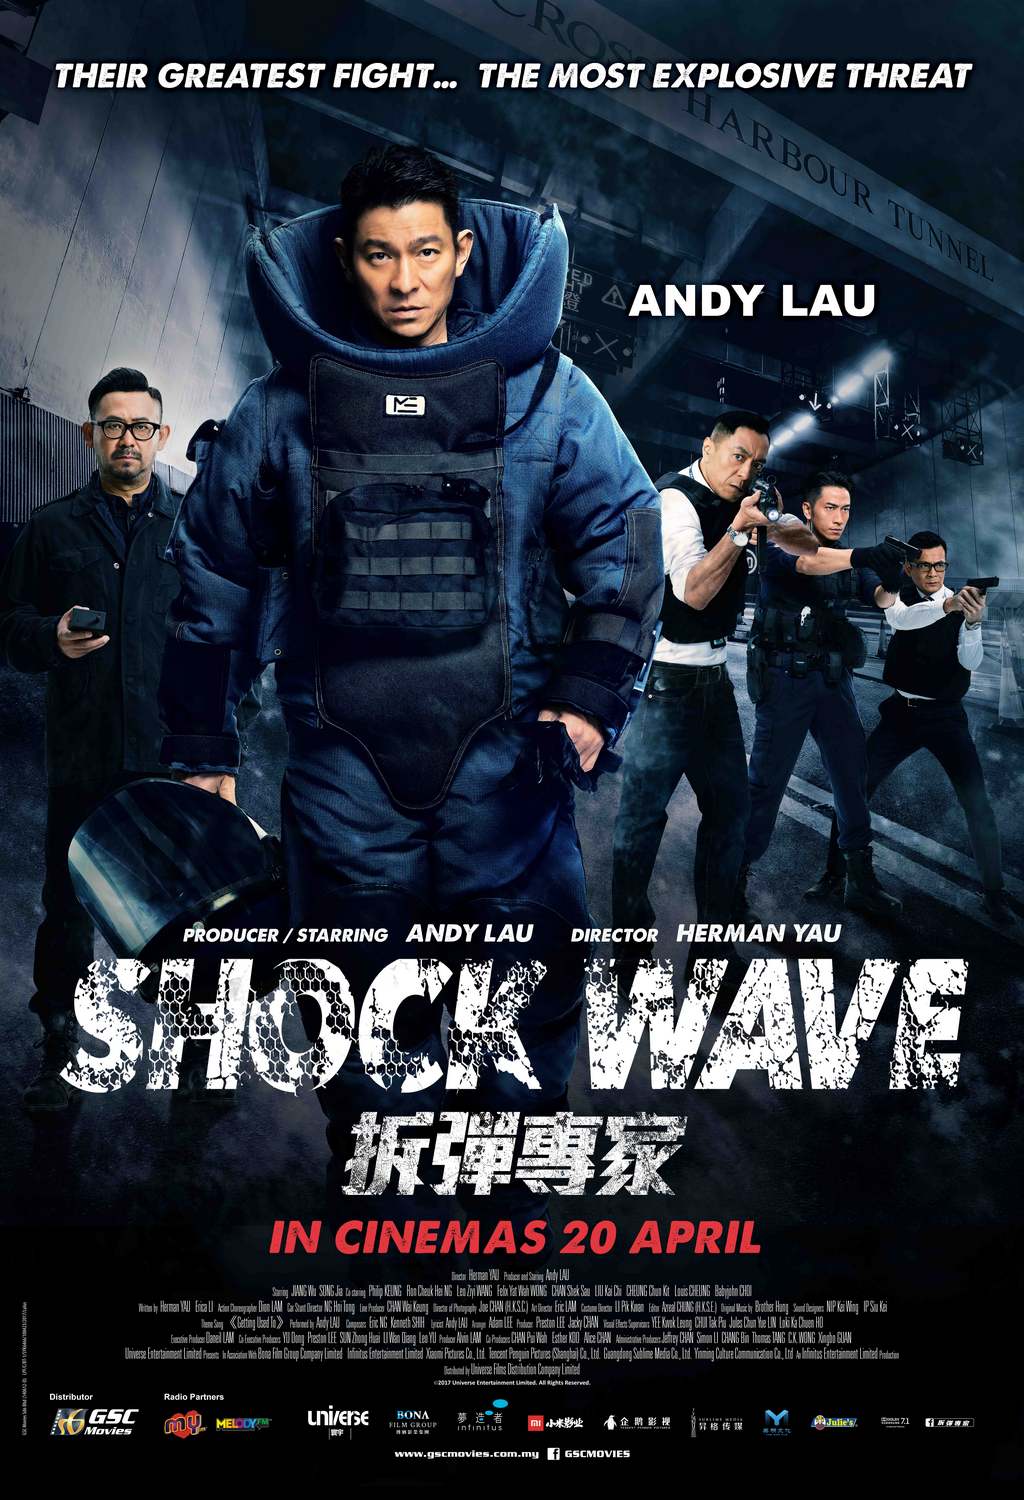 دانلود فیلم Shock Wave 2017